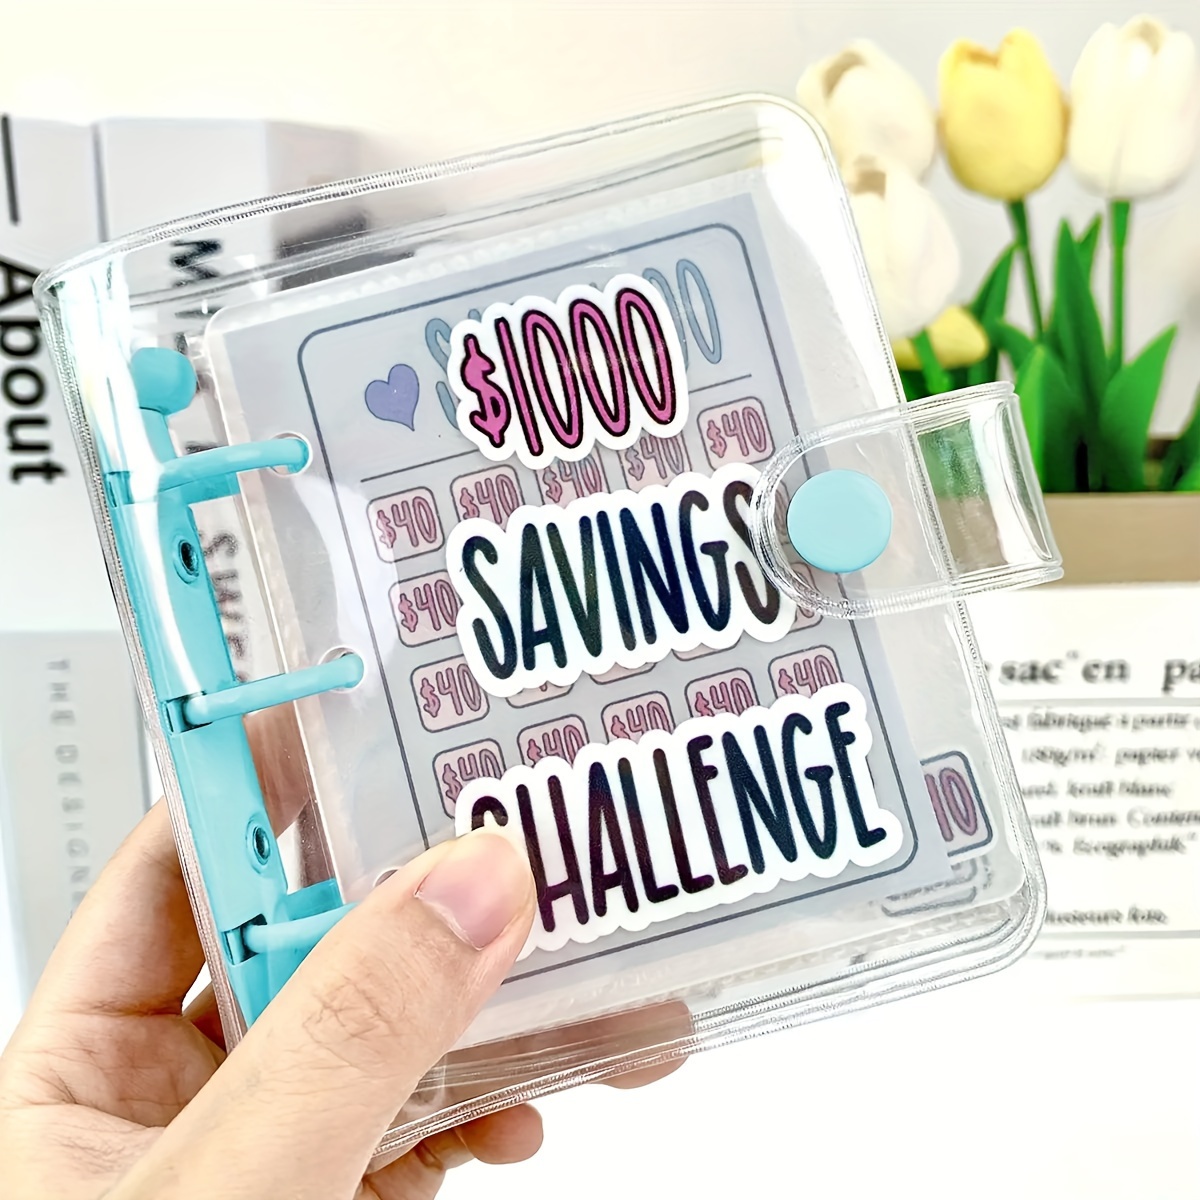  Carpeta de desafíos de 100 sobres, forma fácil y divertida de ahorrar  dinero en efectivo, libro de ahorro A5, libro de ahorros para presupuestos  : Productos de Oficina